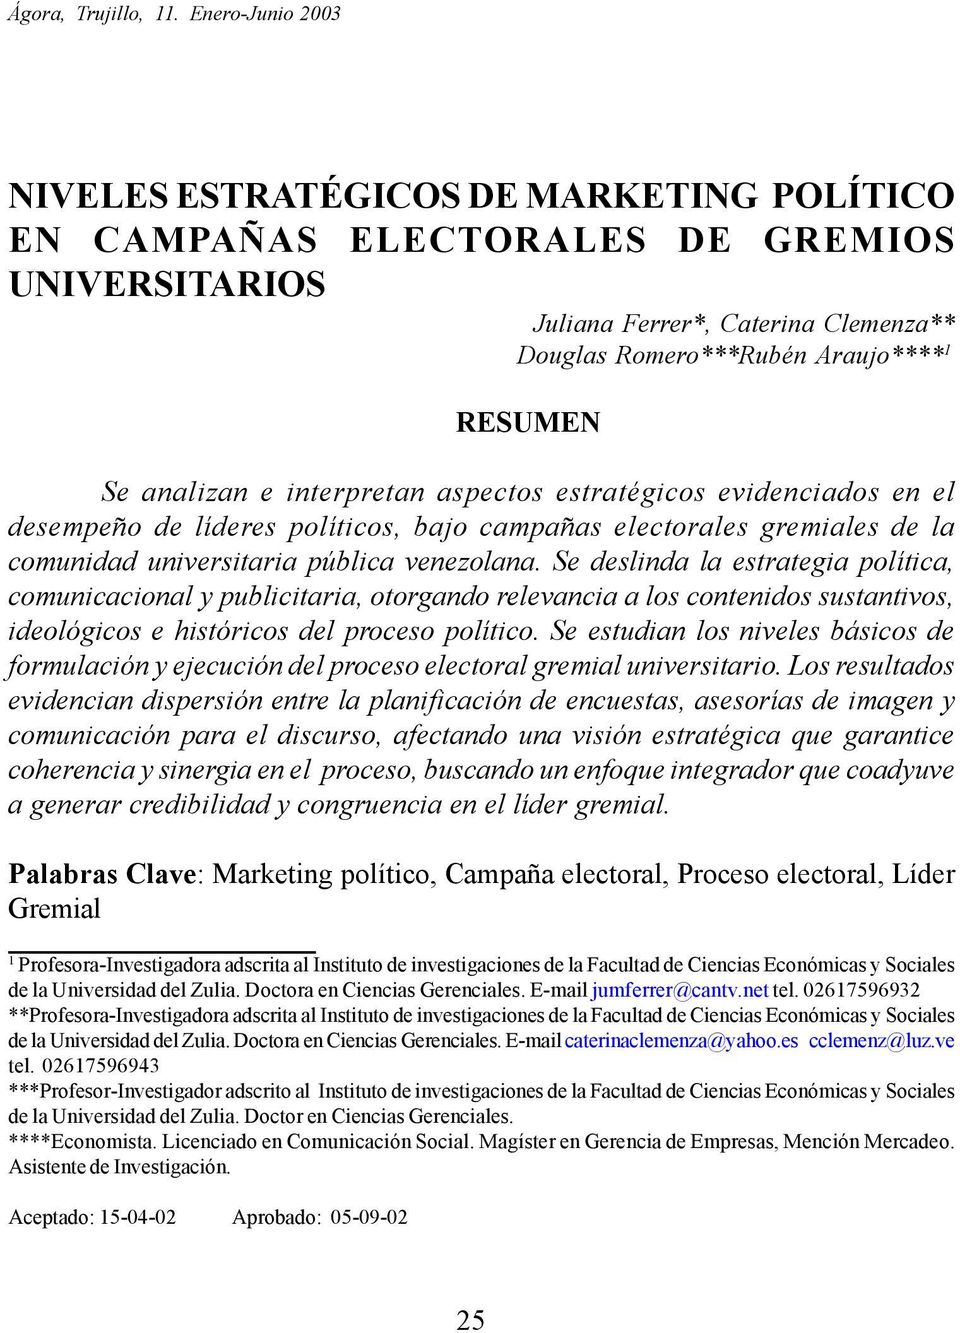 analizan e interpretan aspectos estratégicos evidenciados en el desempeño de líderes políticos, bajo campañas electorales gremiales de la comunidad universitaria pública venezolana.